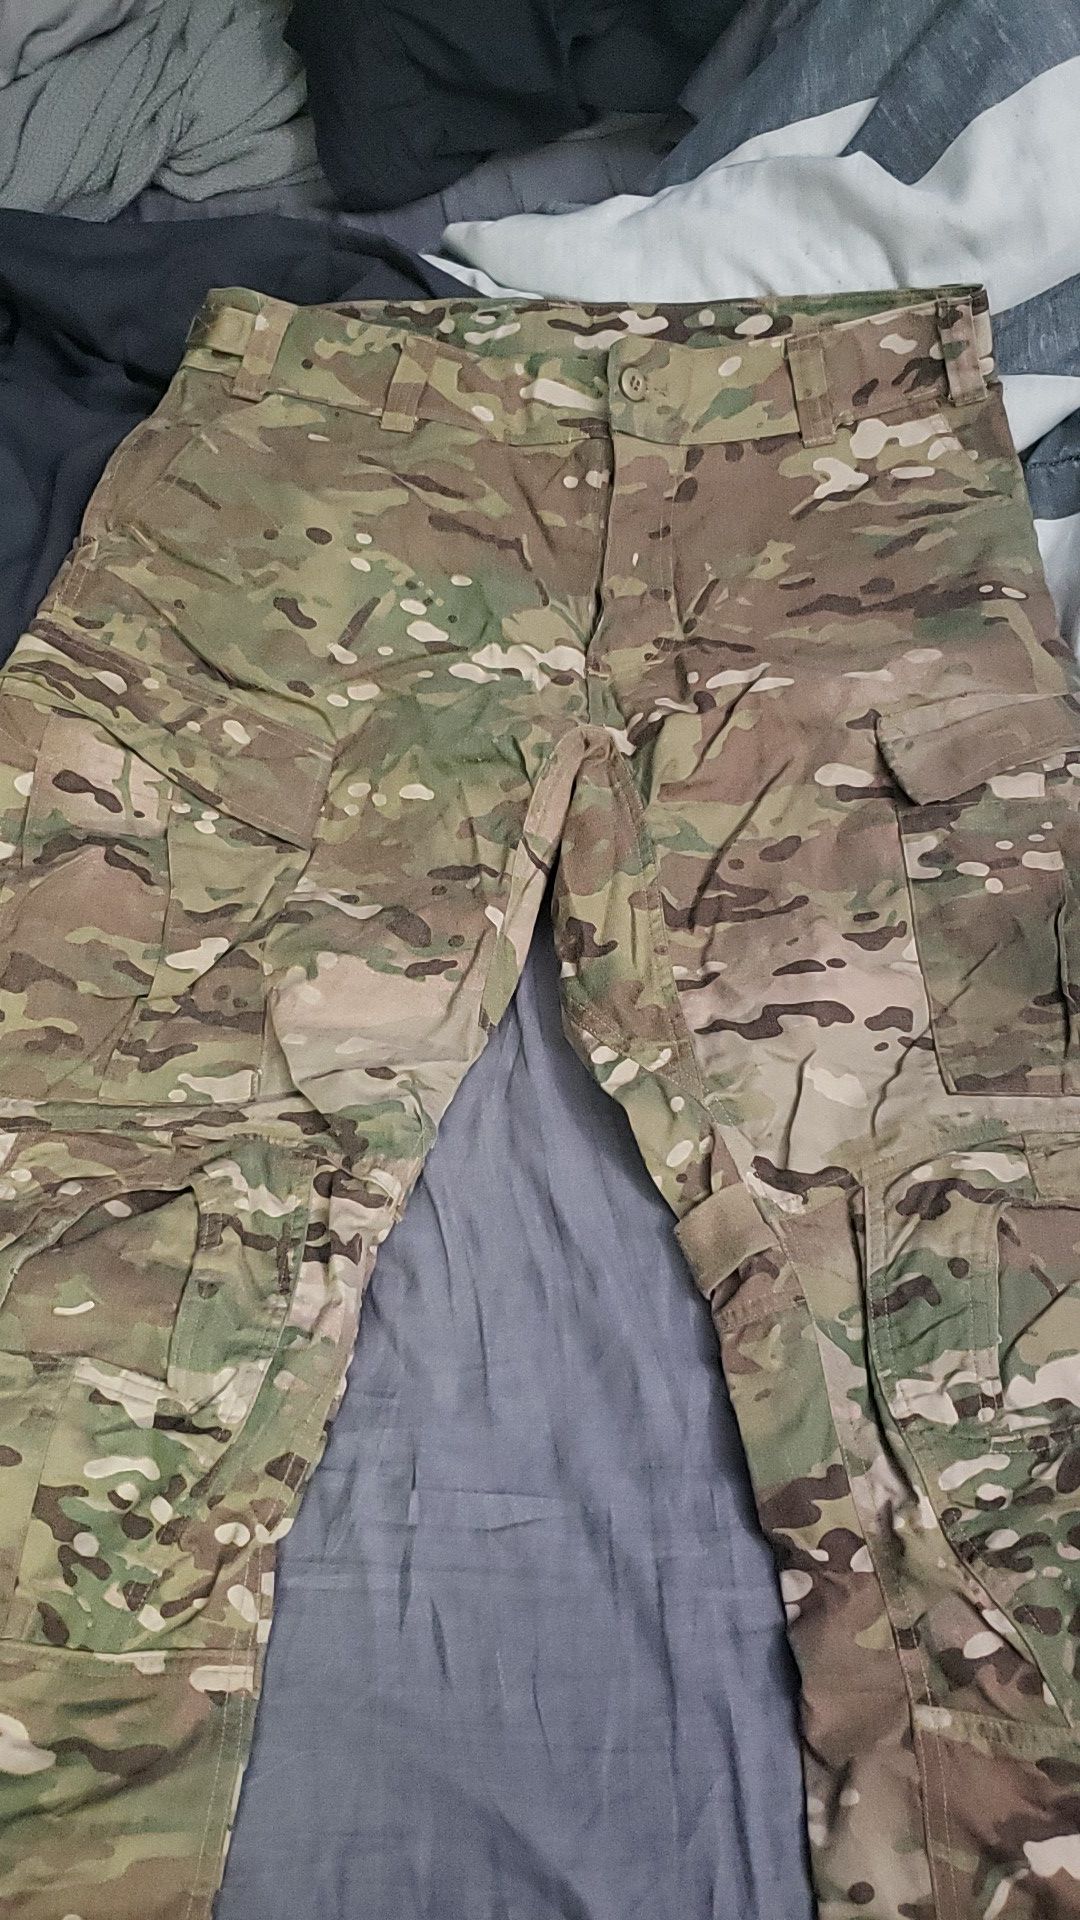 Original Multicam "Combat" pants military issue